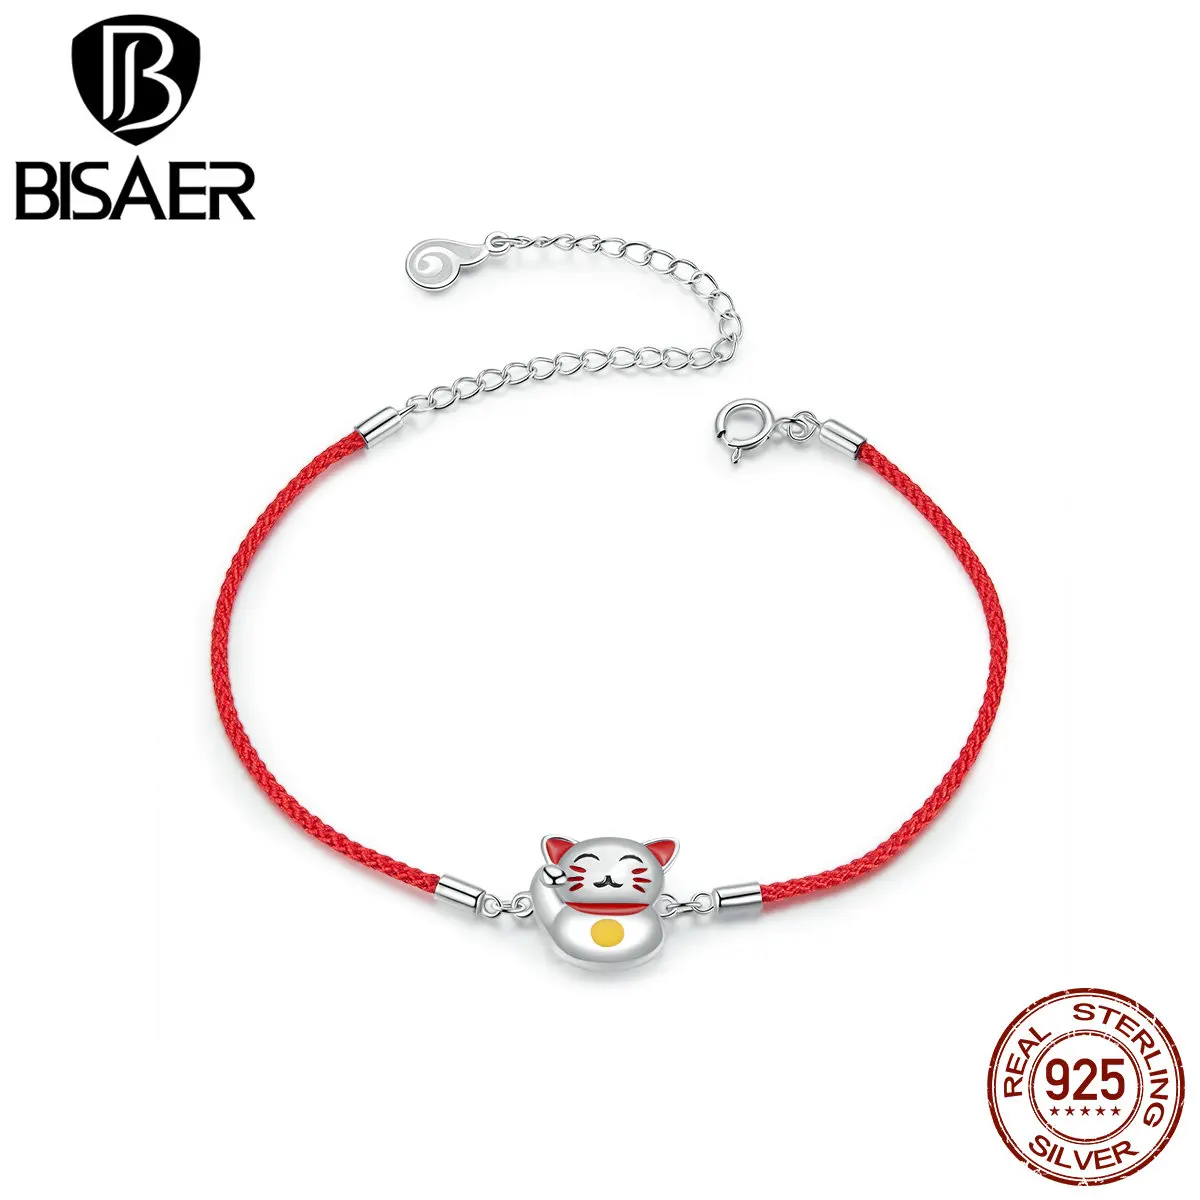 BISAER модный браслет с красной нитью и веревкой, серебро 925, счастливые бусины кошка, браслеты для женщин, ювелирные изделия на удачу, подарок на день рождения BSB012